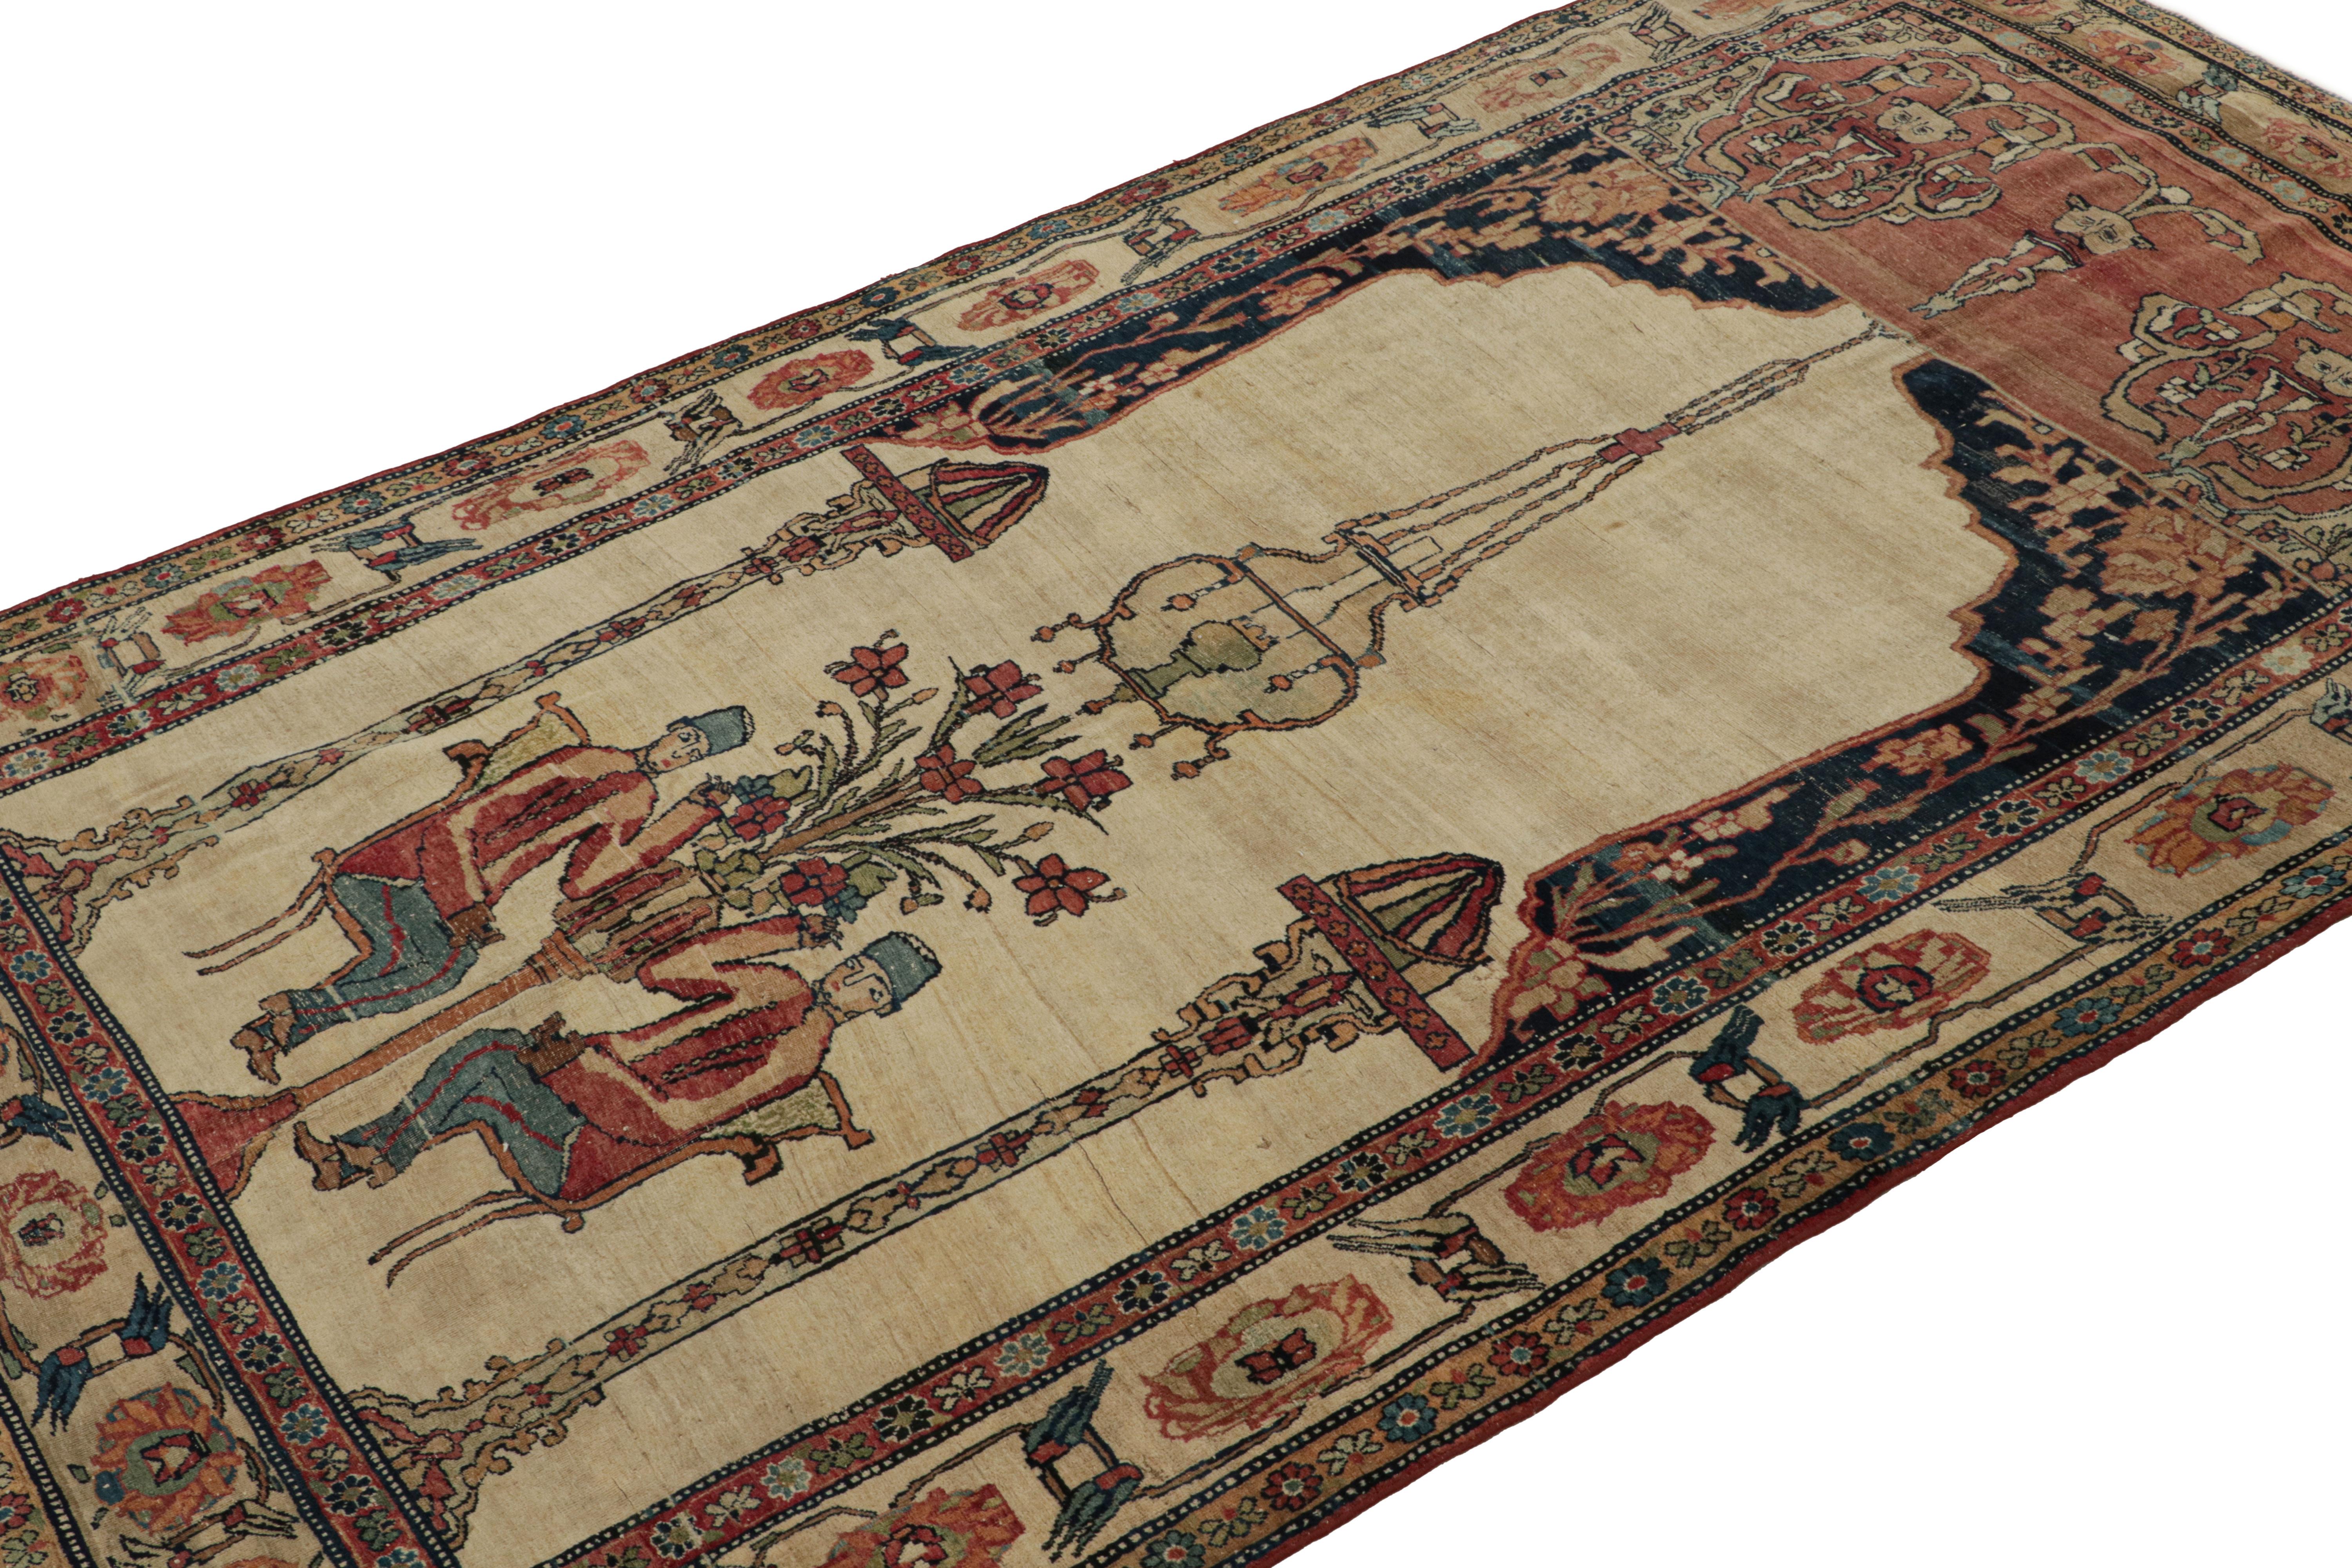 Noué à la main en laine vers 1910-1920, ce tapis de 5 x 8 est une pièce ancienne très spéciale de Kerman avec des motifs picturaux.  

Sur le Design : 

S'inspirant des tapis persans Kerman Lavar, cette œuvre d'art archaïque au charme d'antan